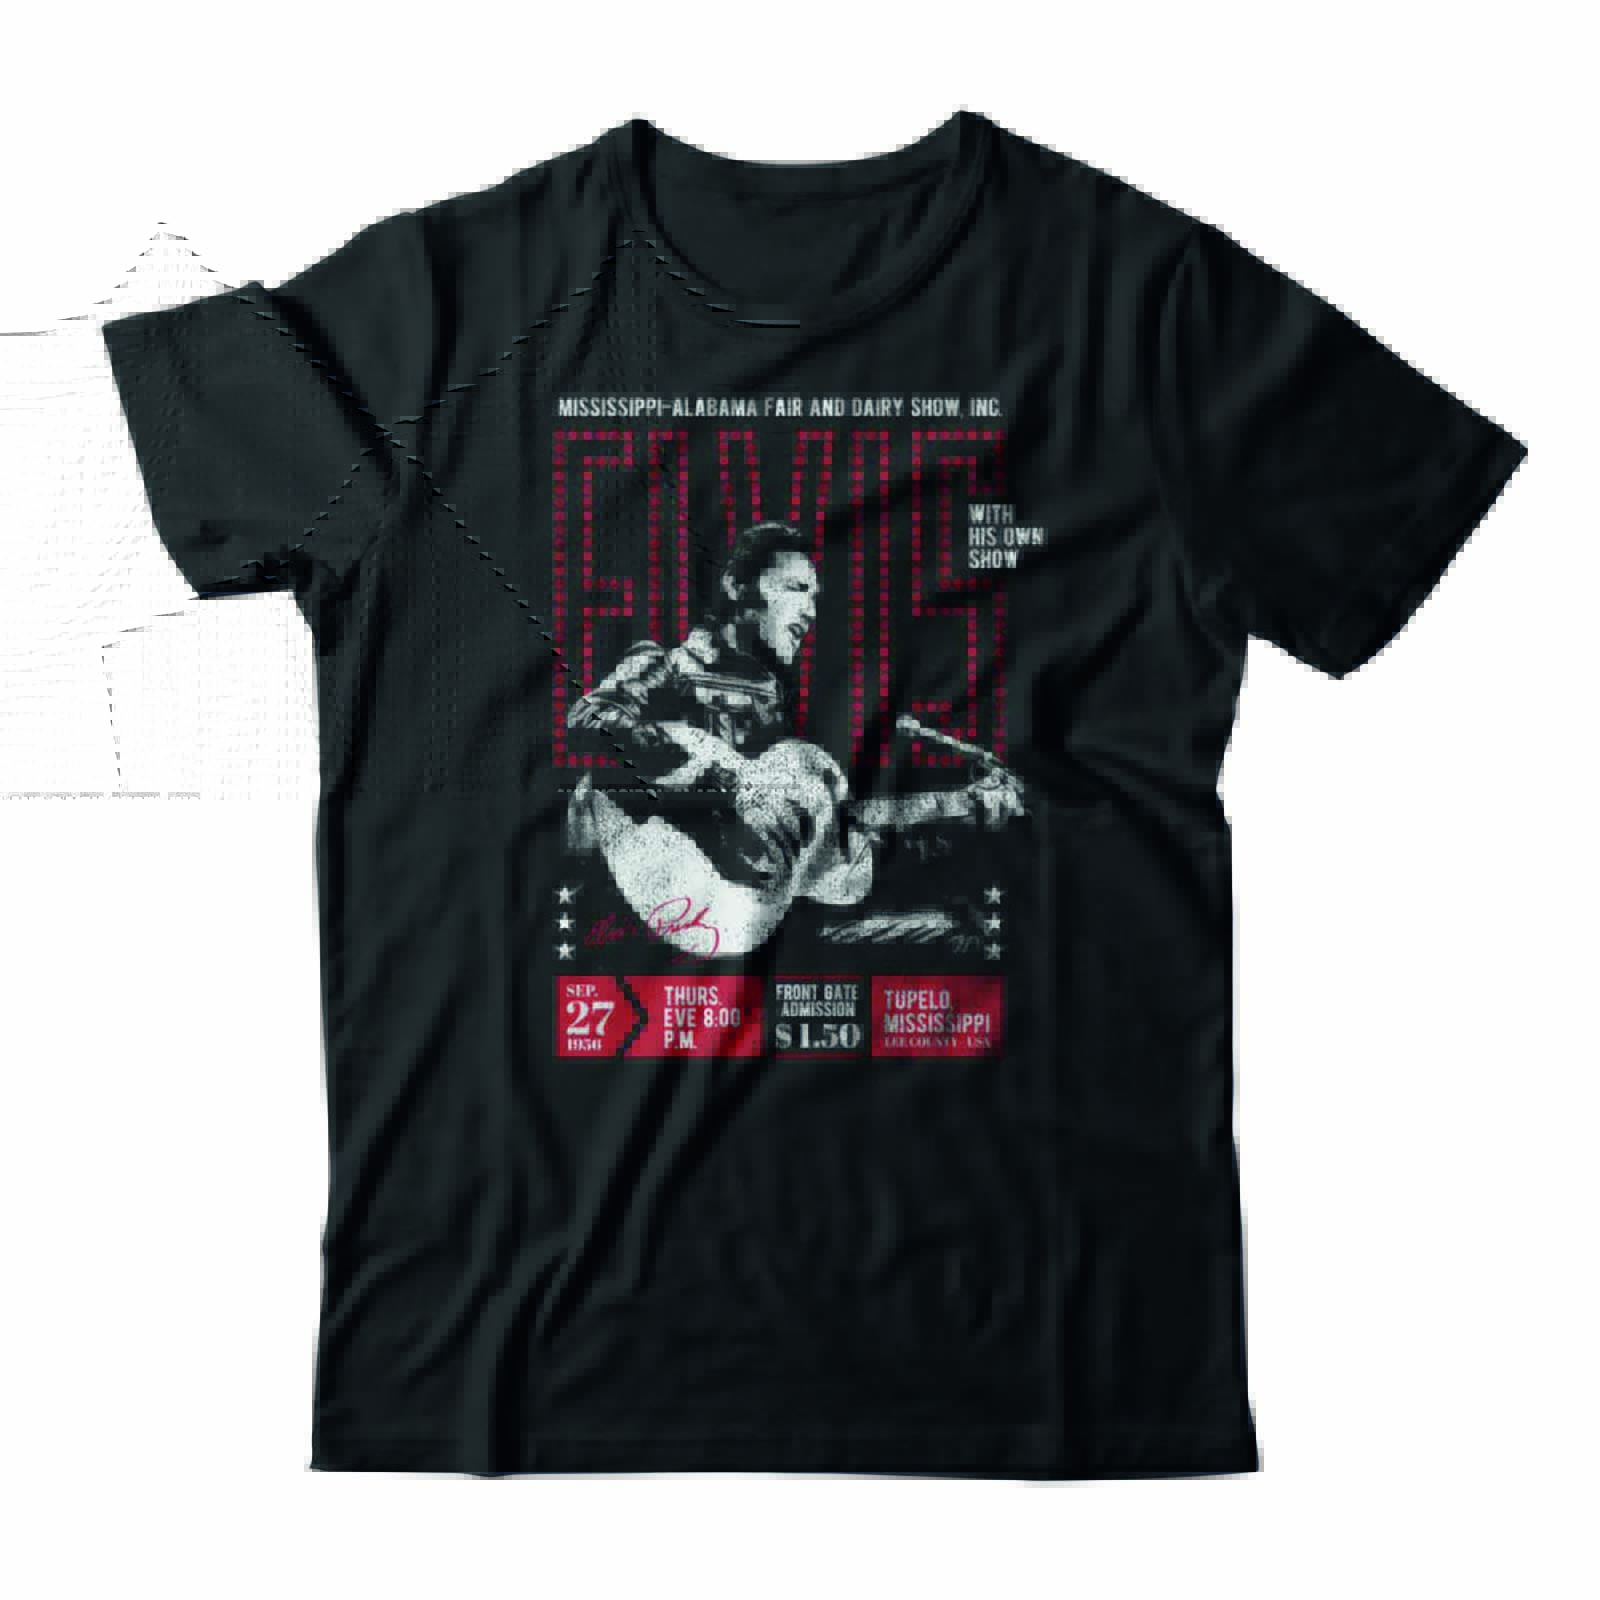 Camiseta Elvis Presley preta. Tem uma estampa do cantor tocando um violão e letras em vermelho